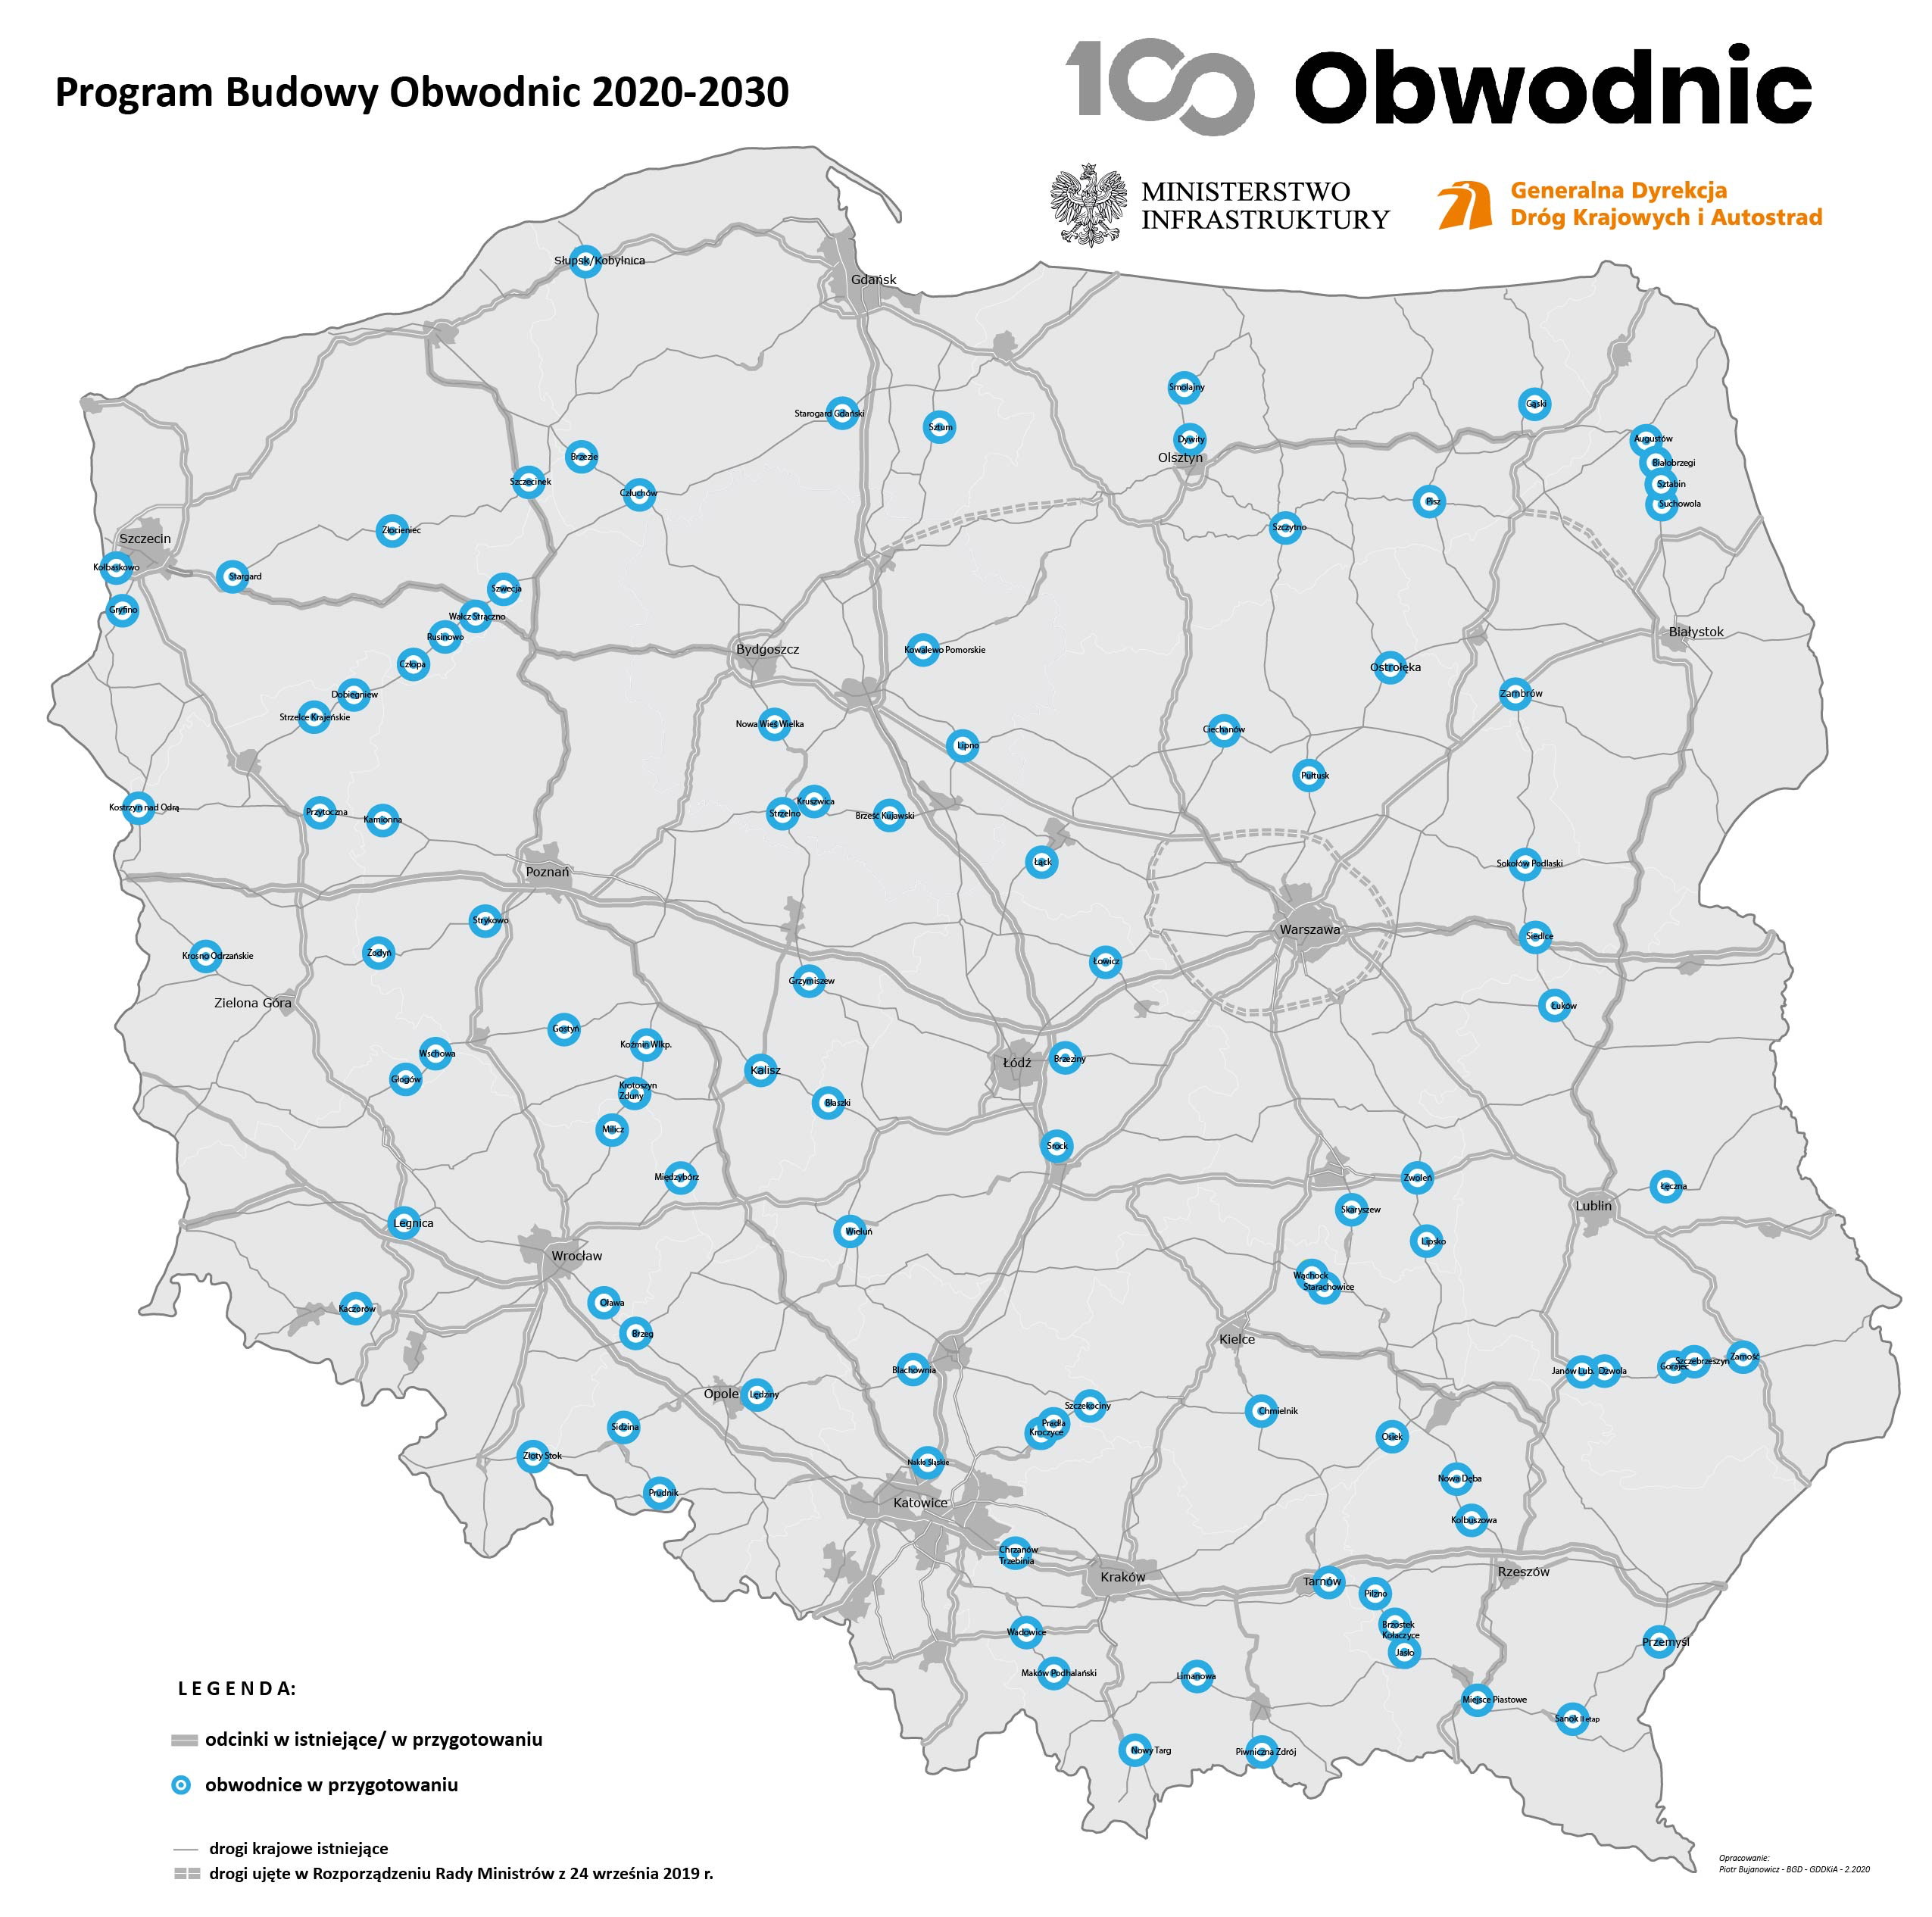 Aktualna Mapa Programu Budowy Obwodnic 2020-2030